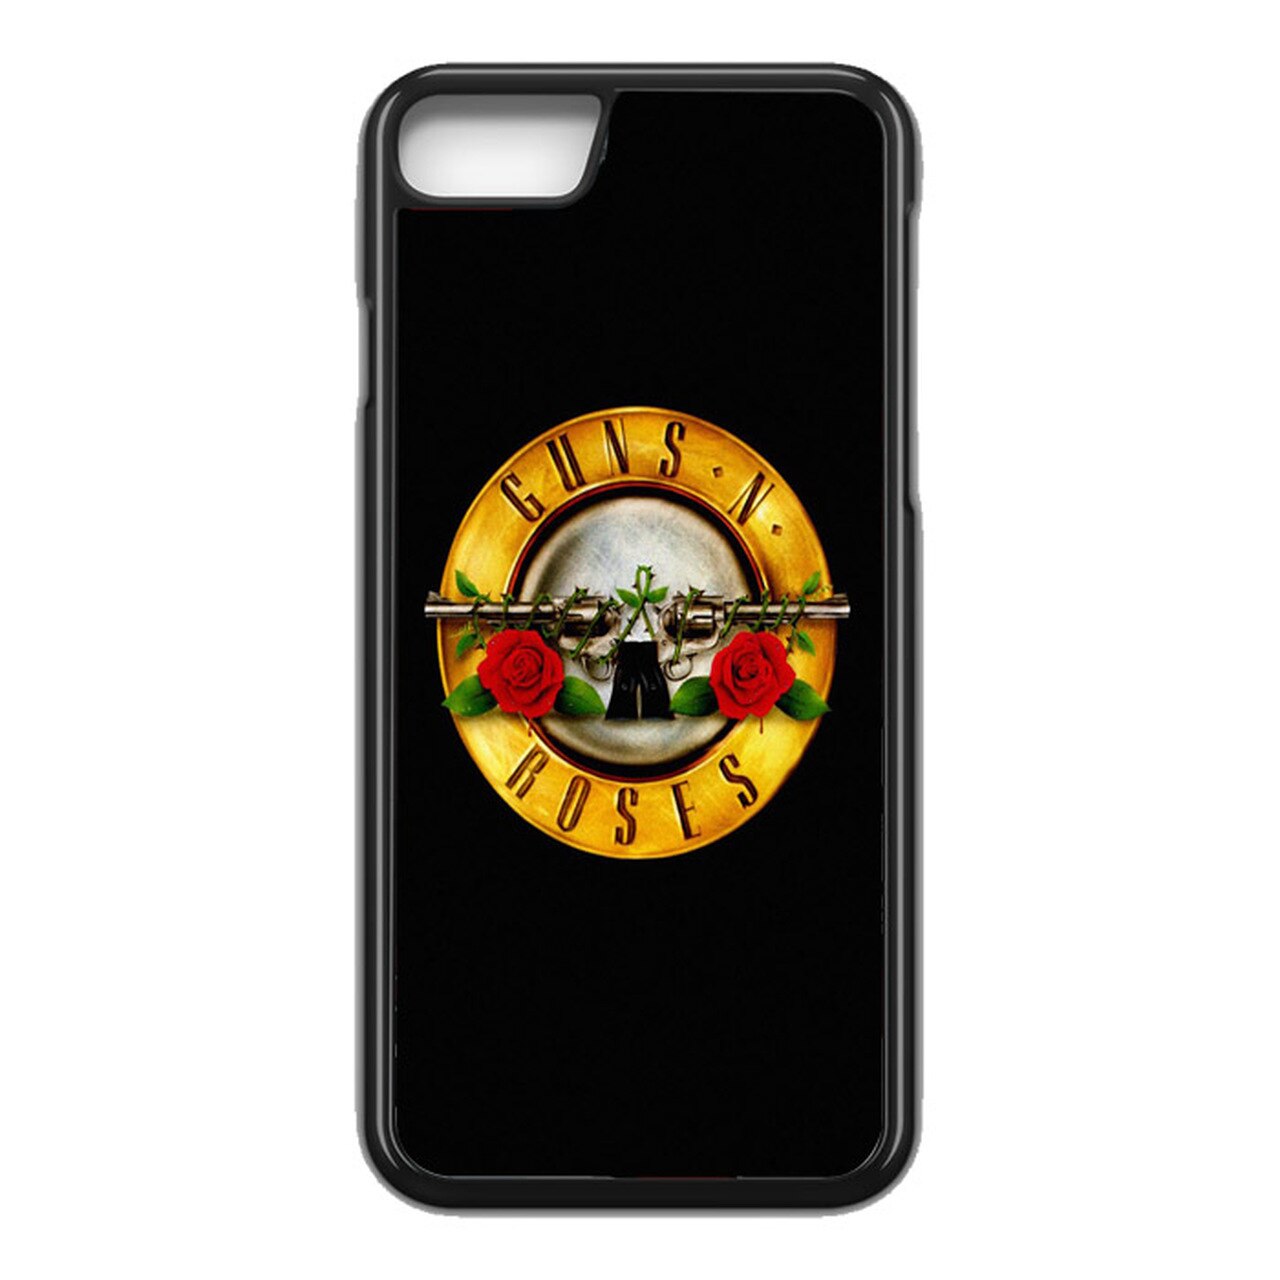 Guns N Roses Logo Wallpaper Iphone - HD Wallpaper 